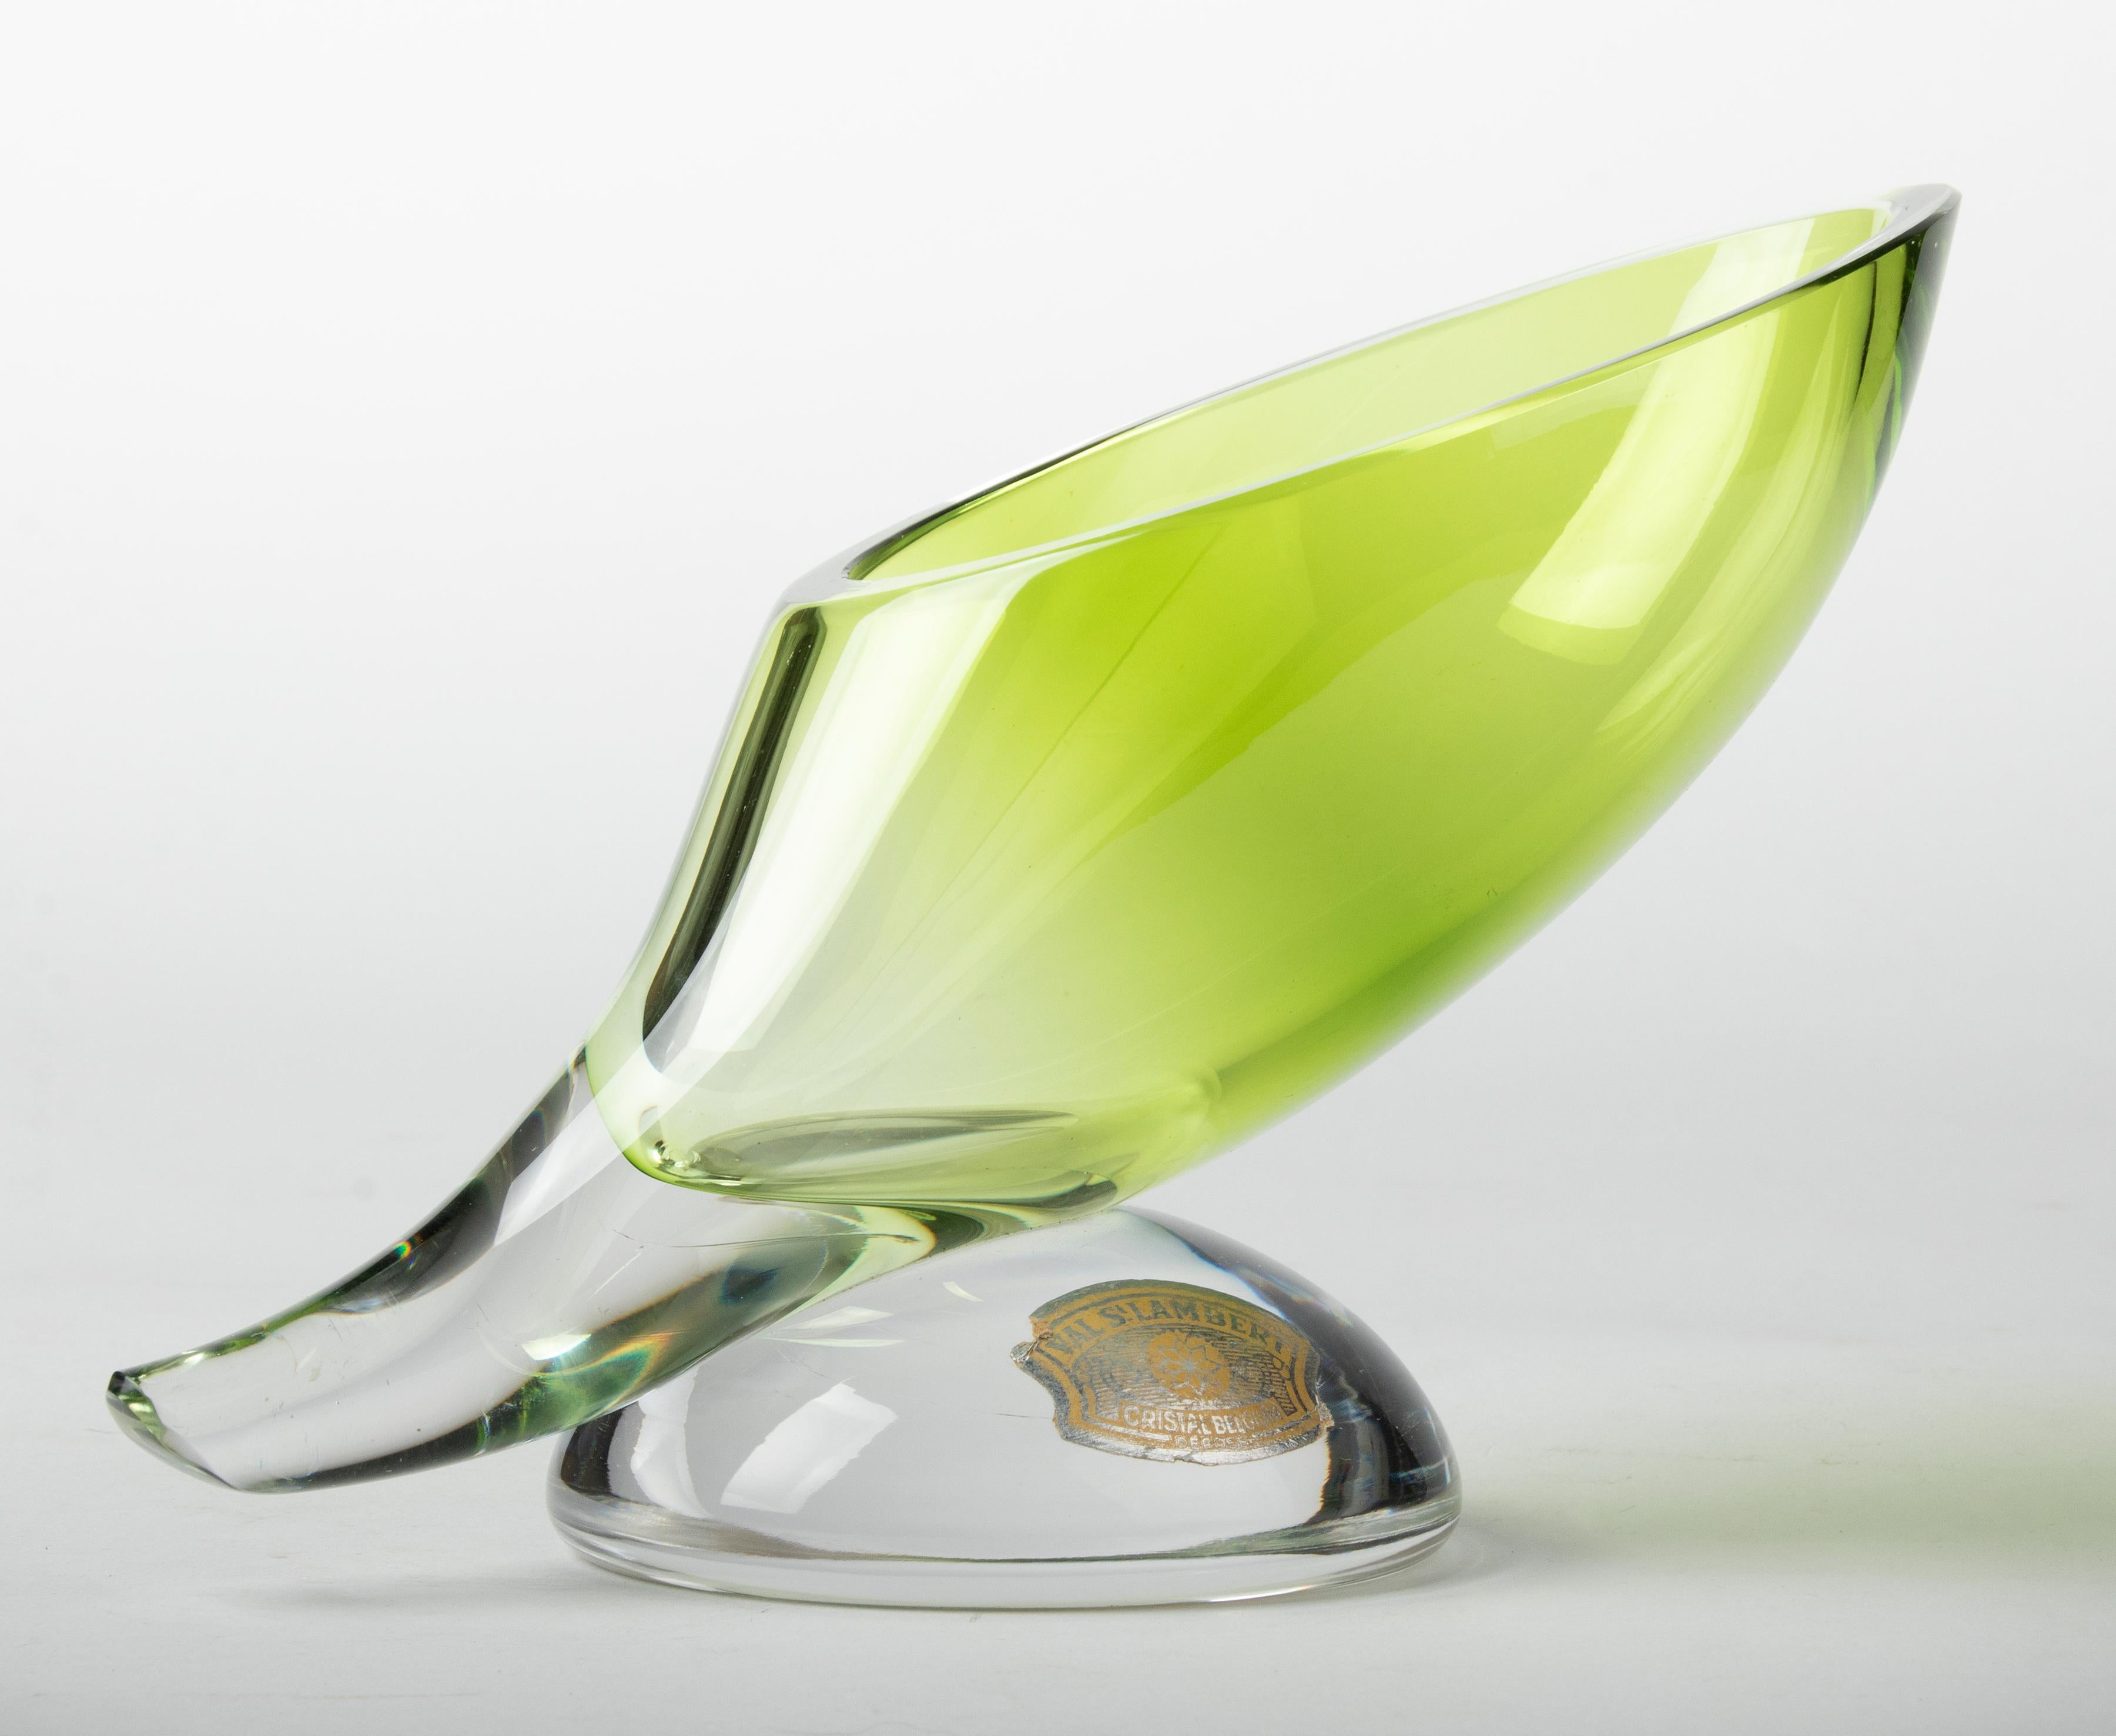 Magnifique vase en cristal de la marque belge Val Saint Lambert. Le vase est signé sur le fond. Le vase a une couleur verte plus vive et a la forme d'une corne. Il date d'environ 1960. En bon état.